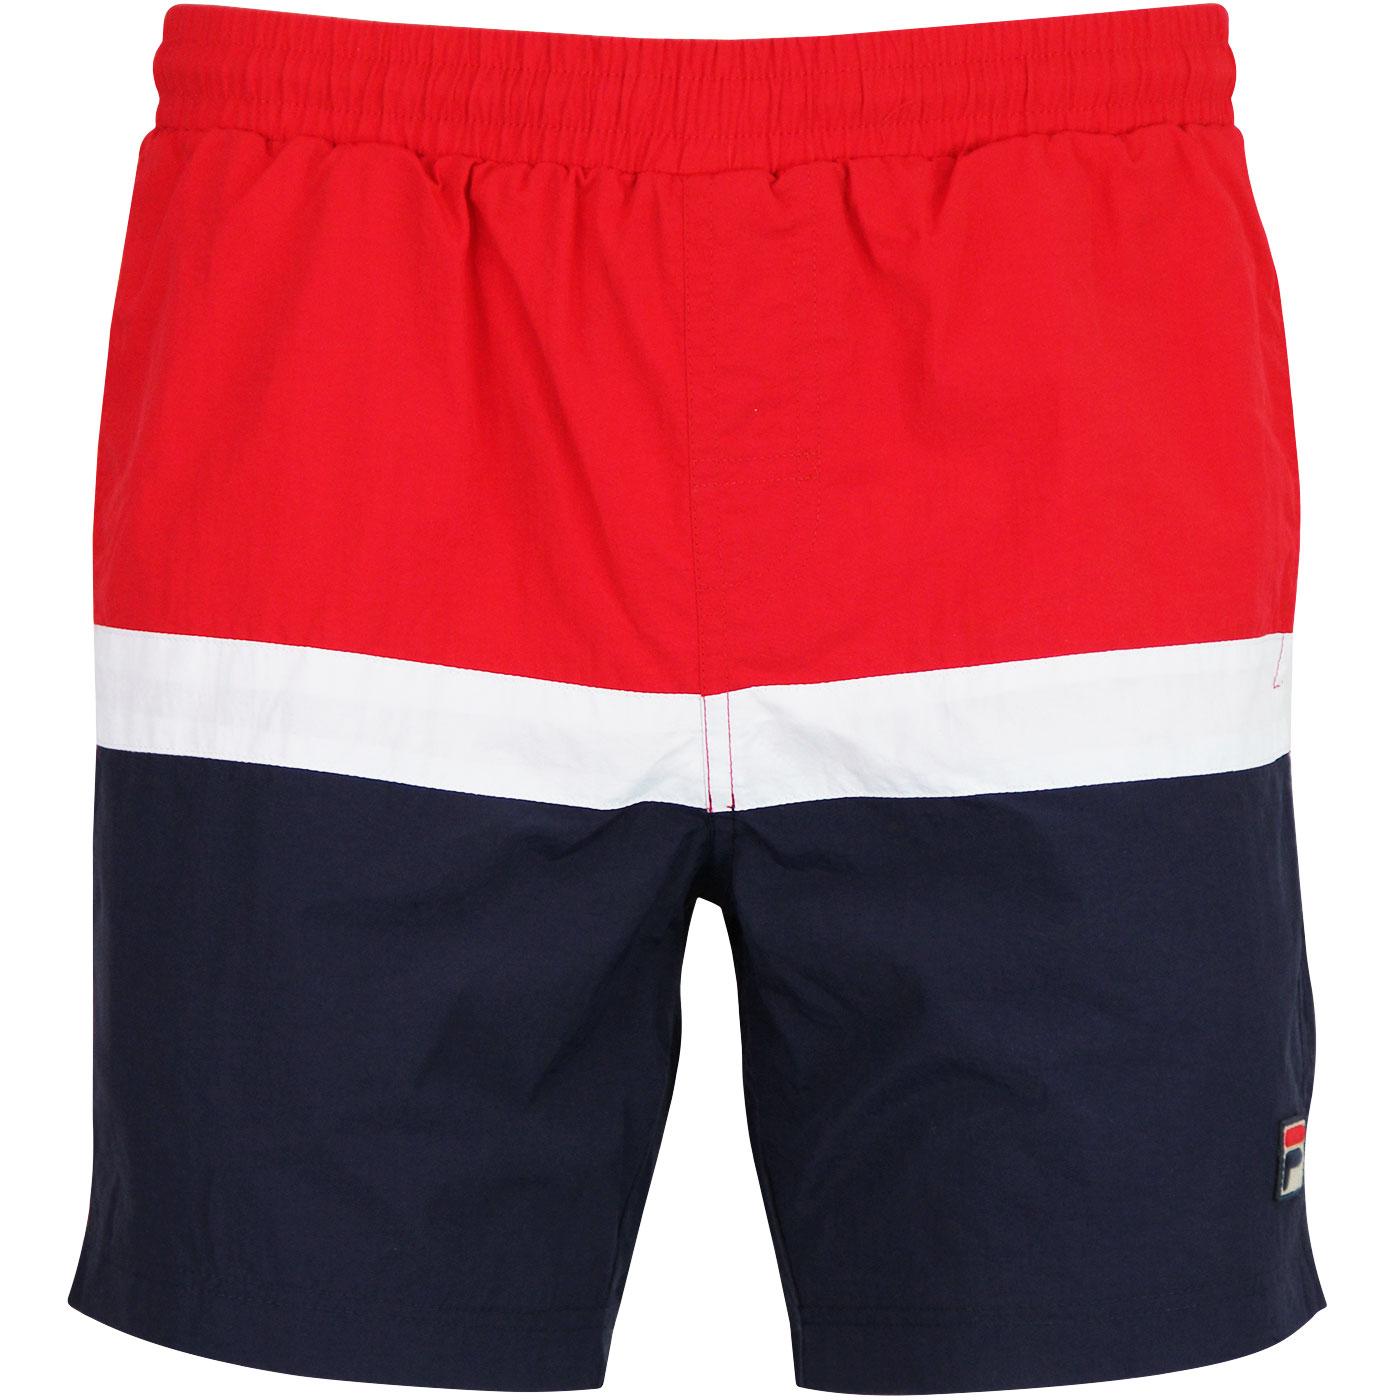 fila colour block swim shorts